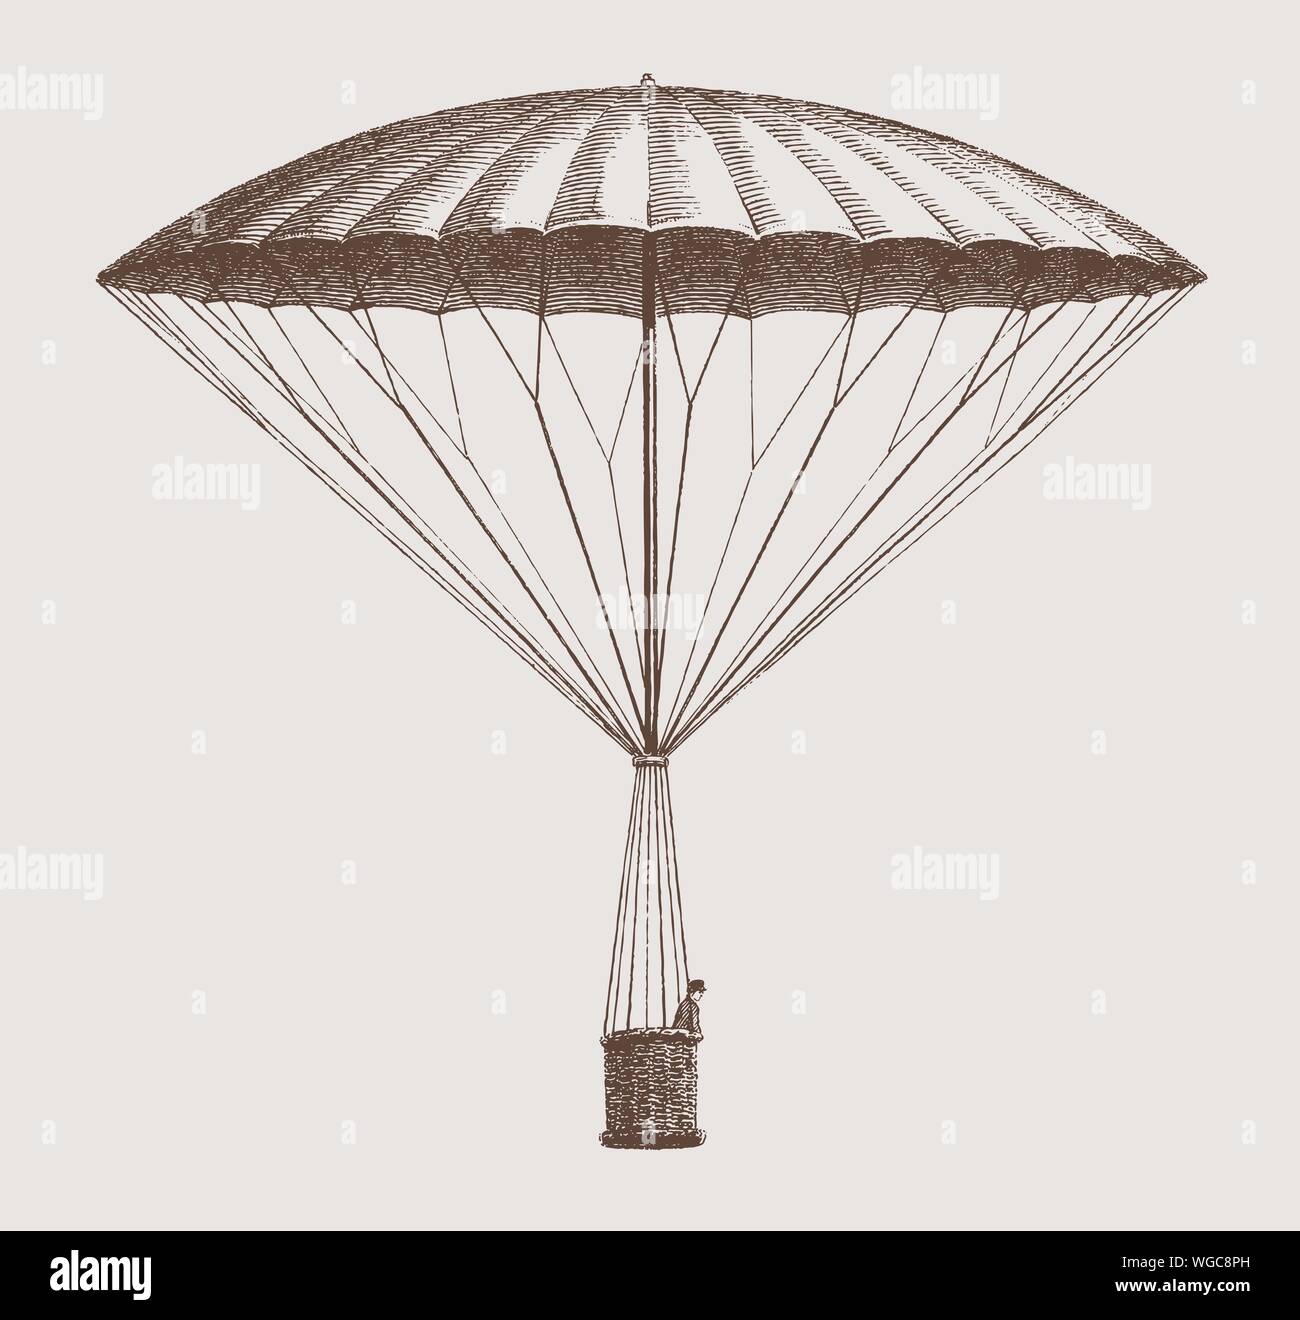 Historische rahmenlose Fallschirm durch André-Jacques garnerin von 1797 absteigend. Abbildung: Nachdem eine Radierung aus dem frühen 19. Jahrhundert Stock Vektor